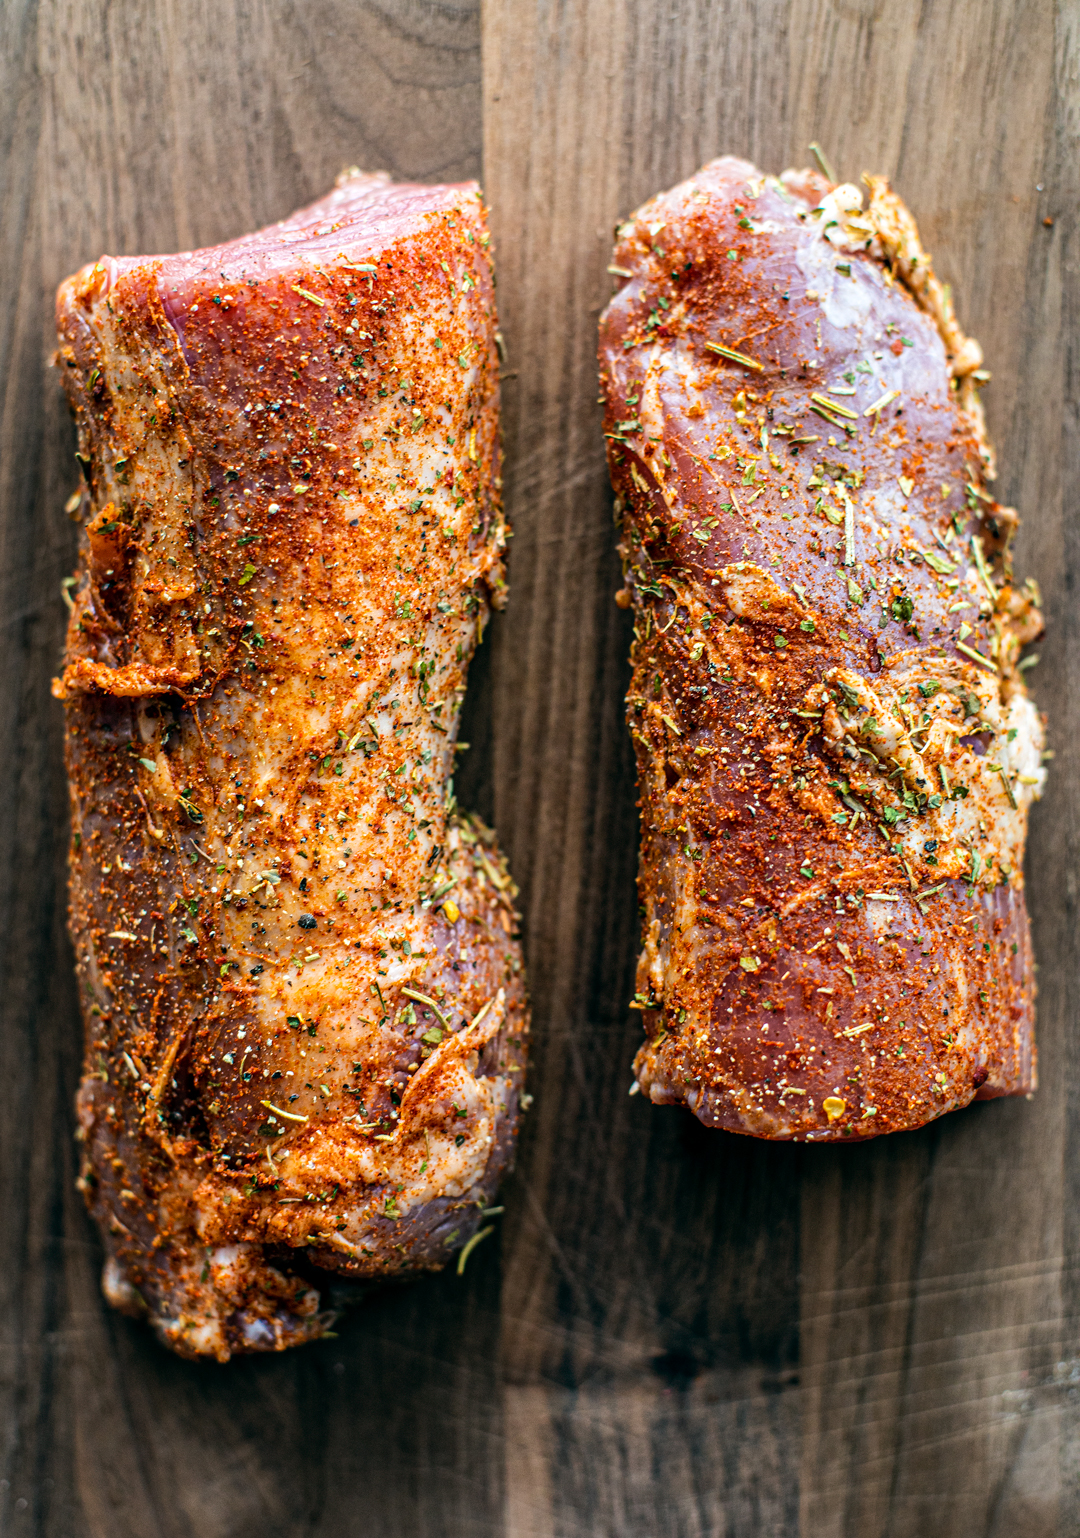 Overhead shot of raw seasoned pork tenderloin on a wooden cutting board.